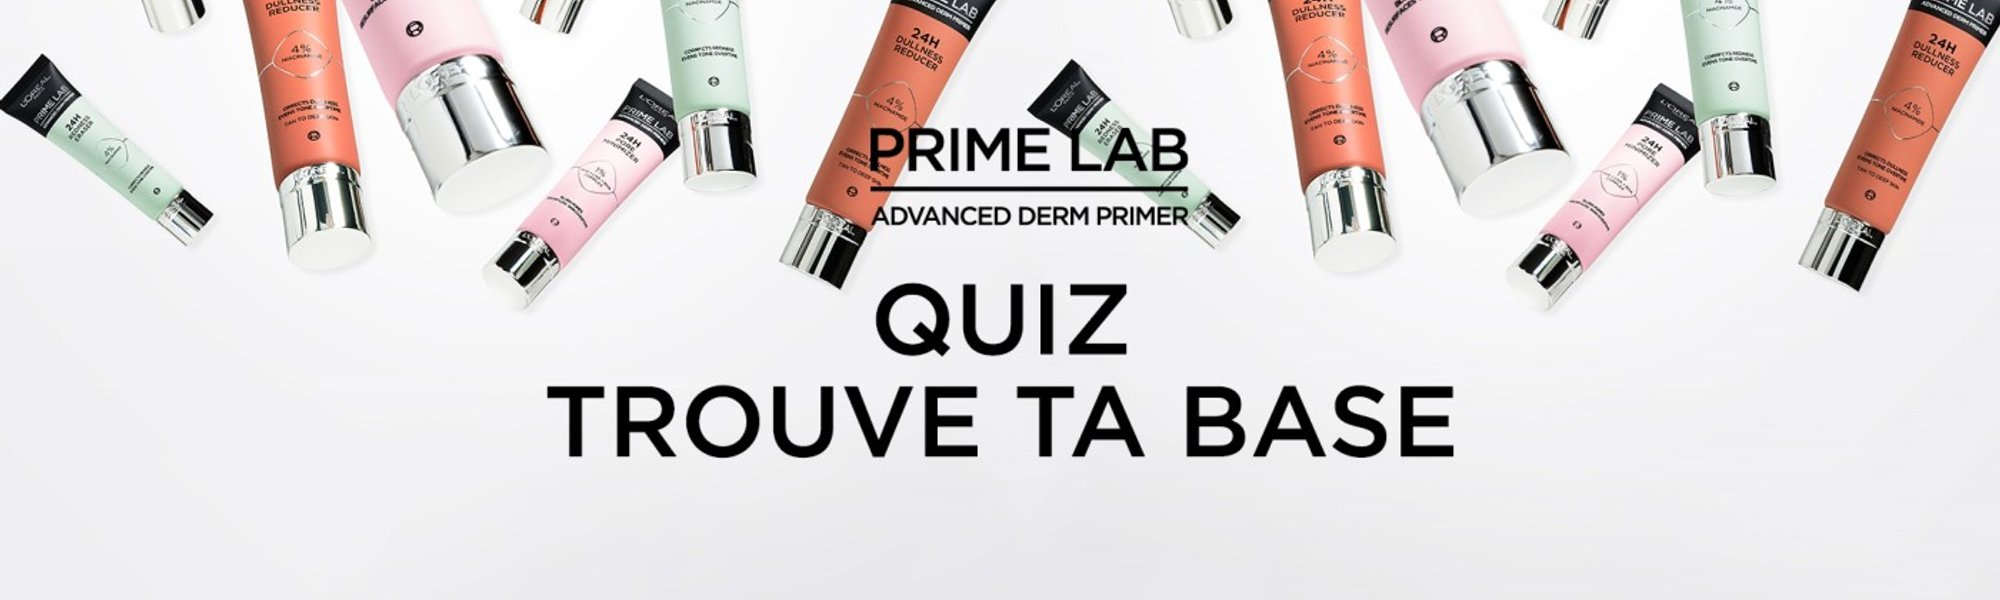 Prime Lab Quizz Banner Fr V4